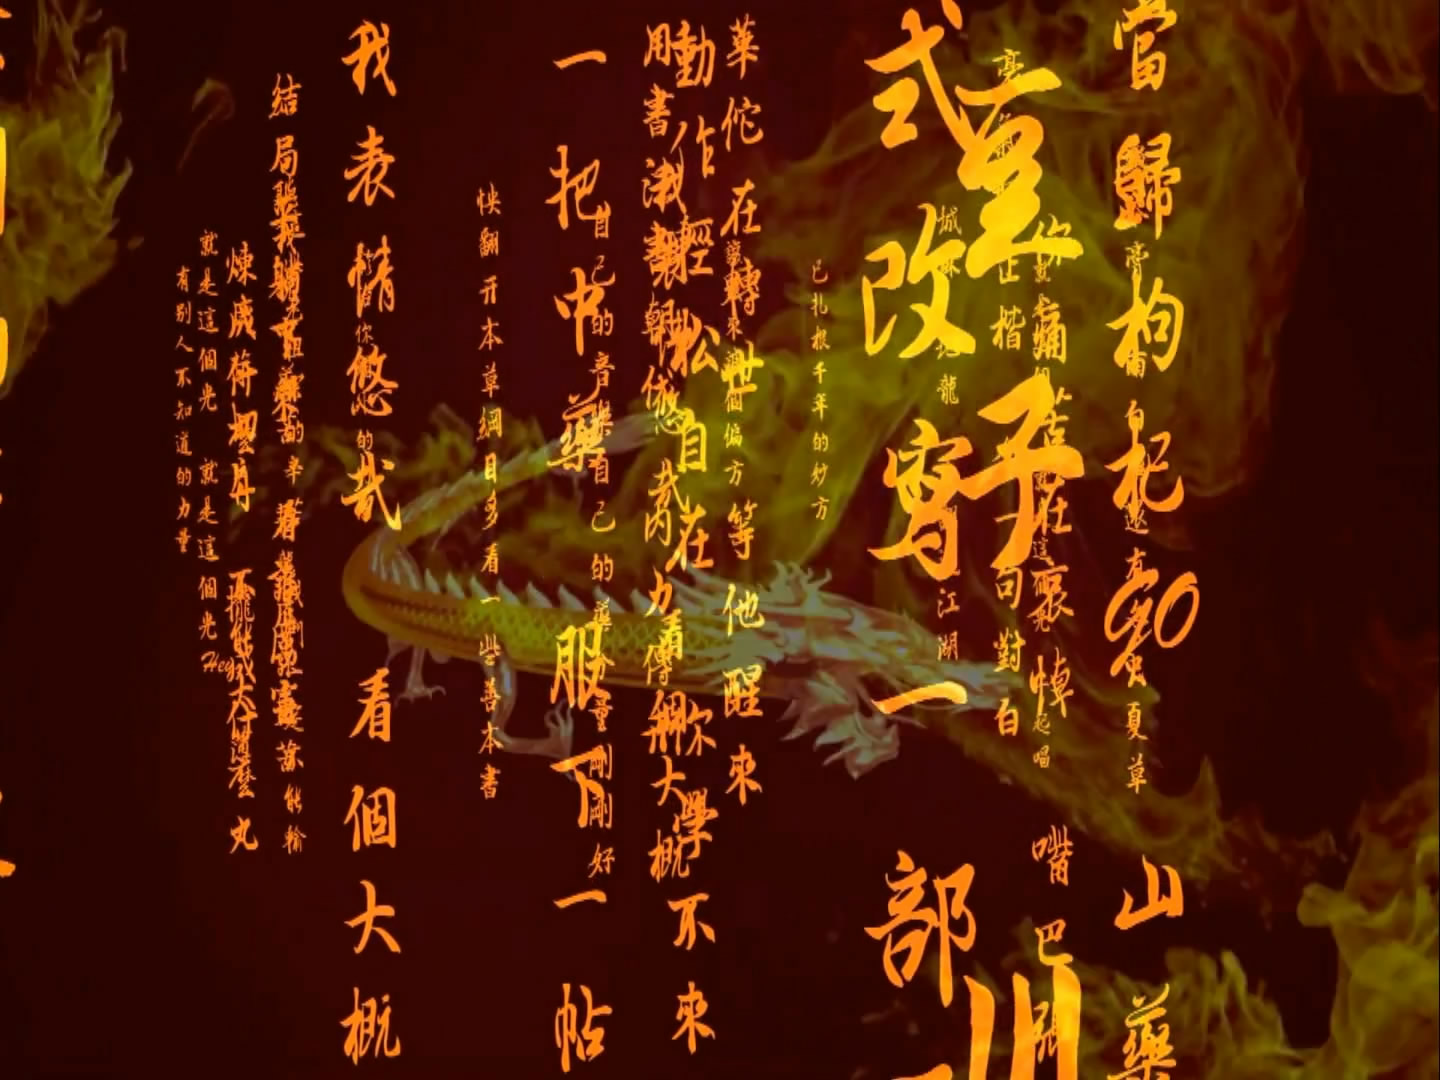 金龙飞舞图腾古文字 中国风书法剑术武术晚会led背景视频素材图片